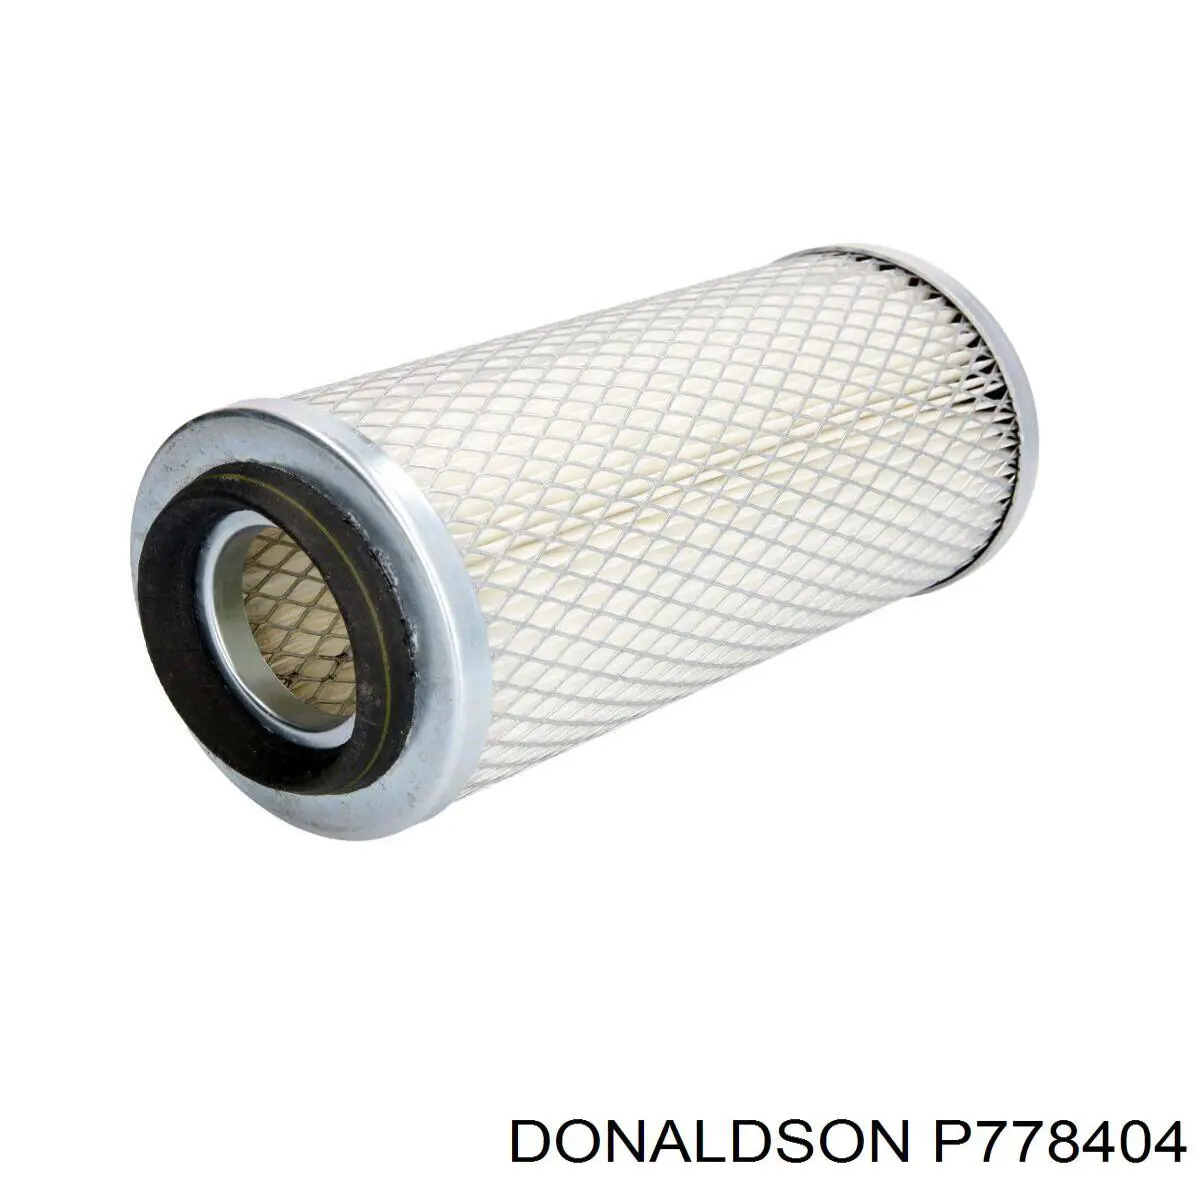 P778404 Donaldson filtro de aire